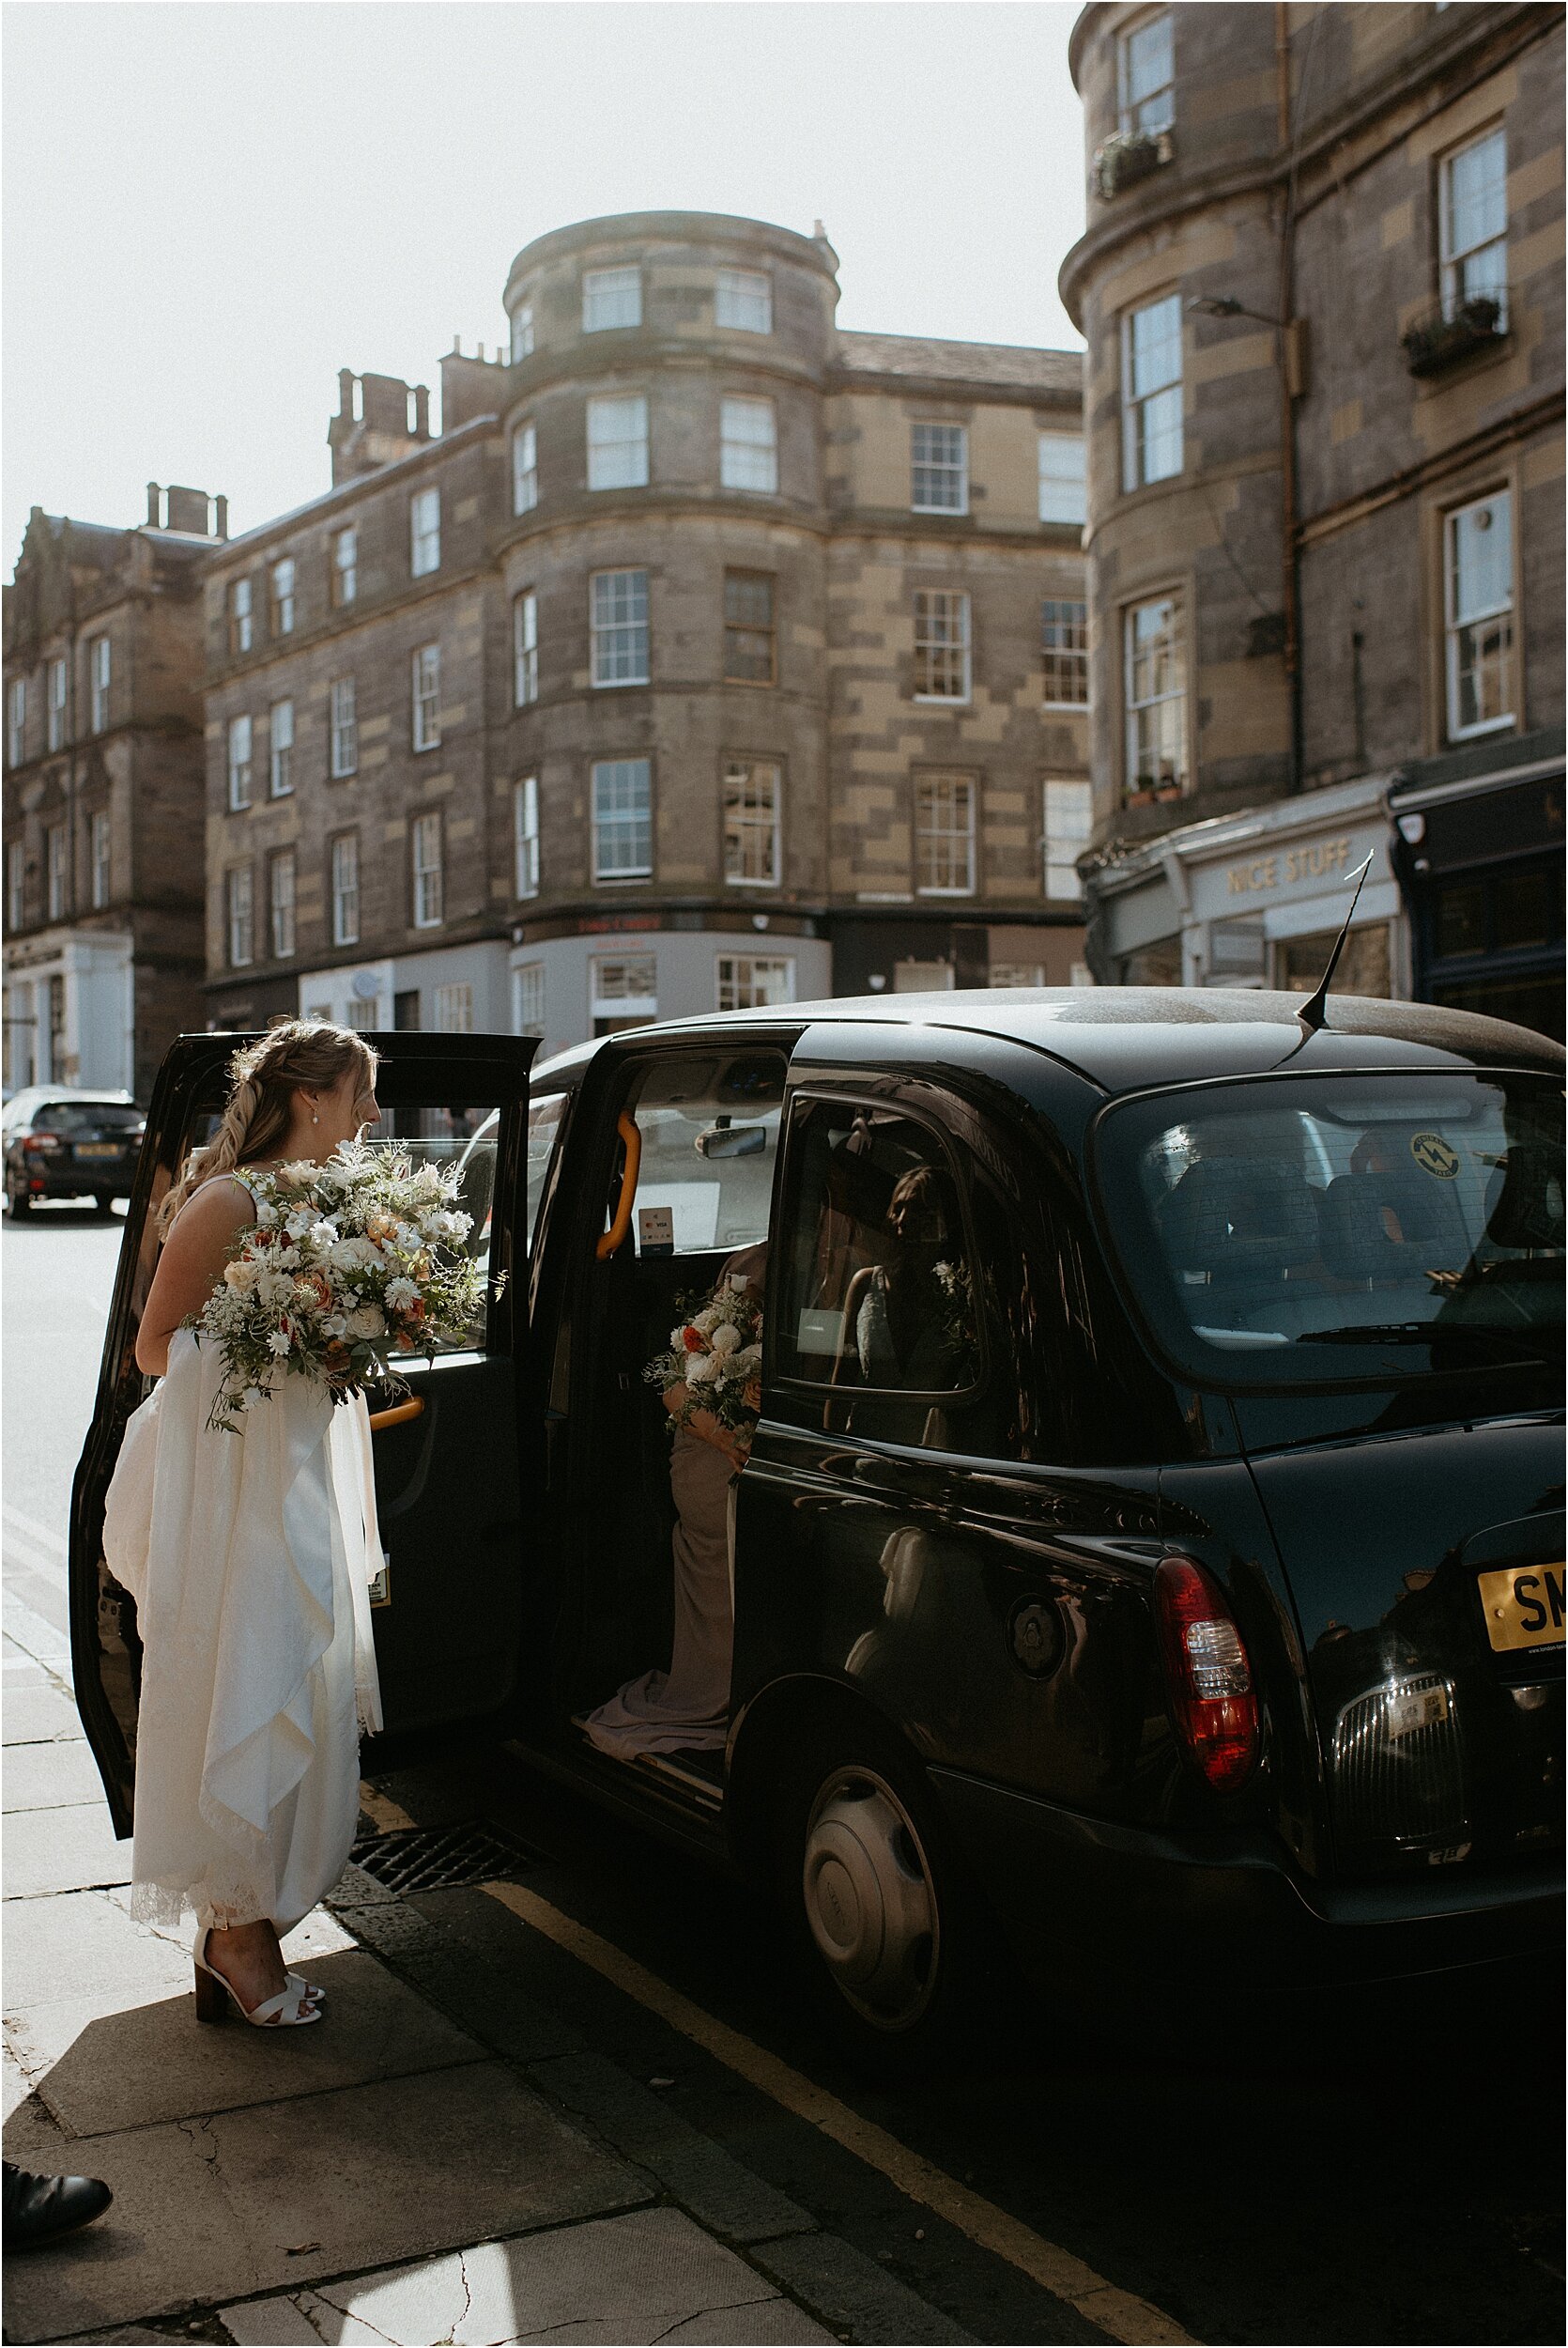 Timberyard-wedding-Edinburgh-13.jpg